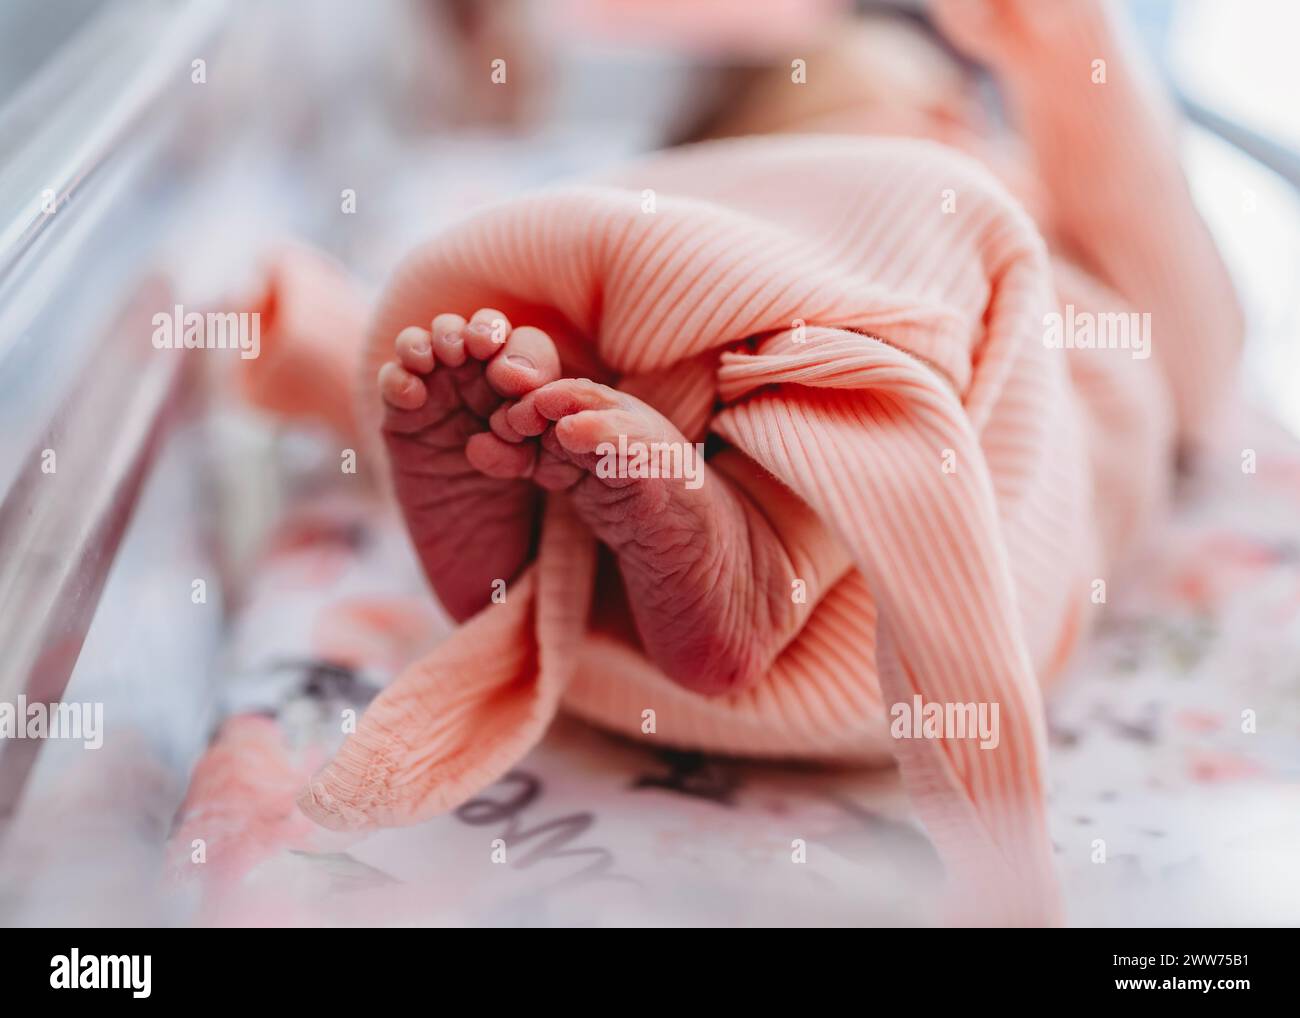 Nahaufnahme der kleinen Füße und Zehen des Neugeborenen Stockfoto